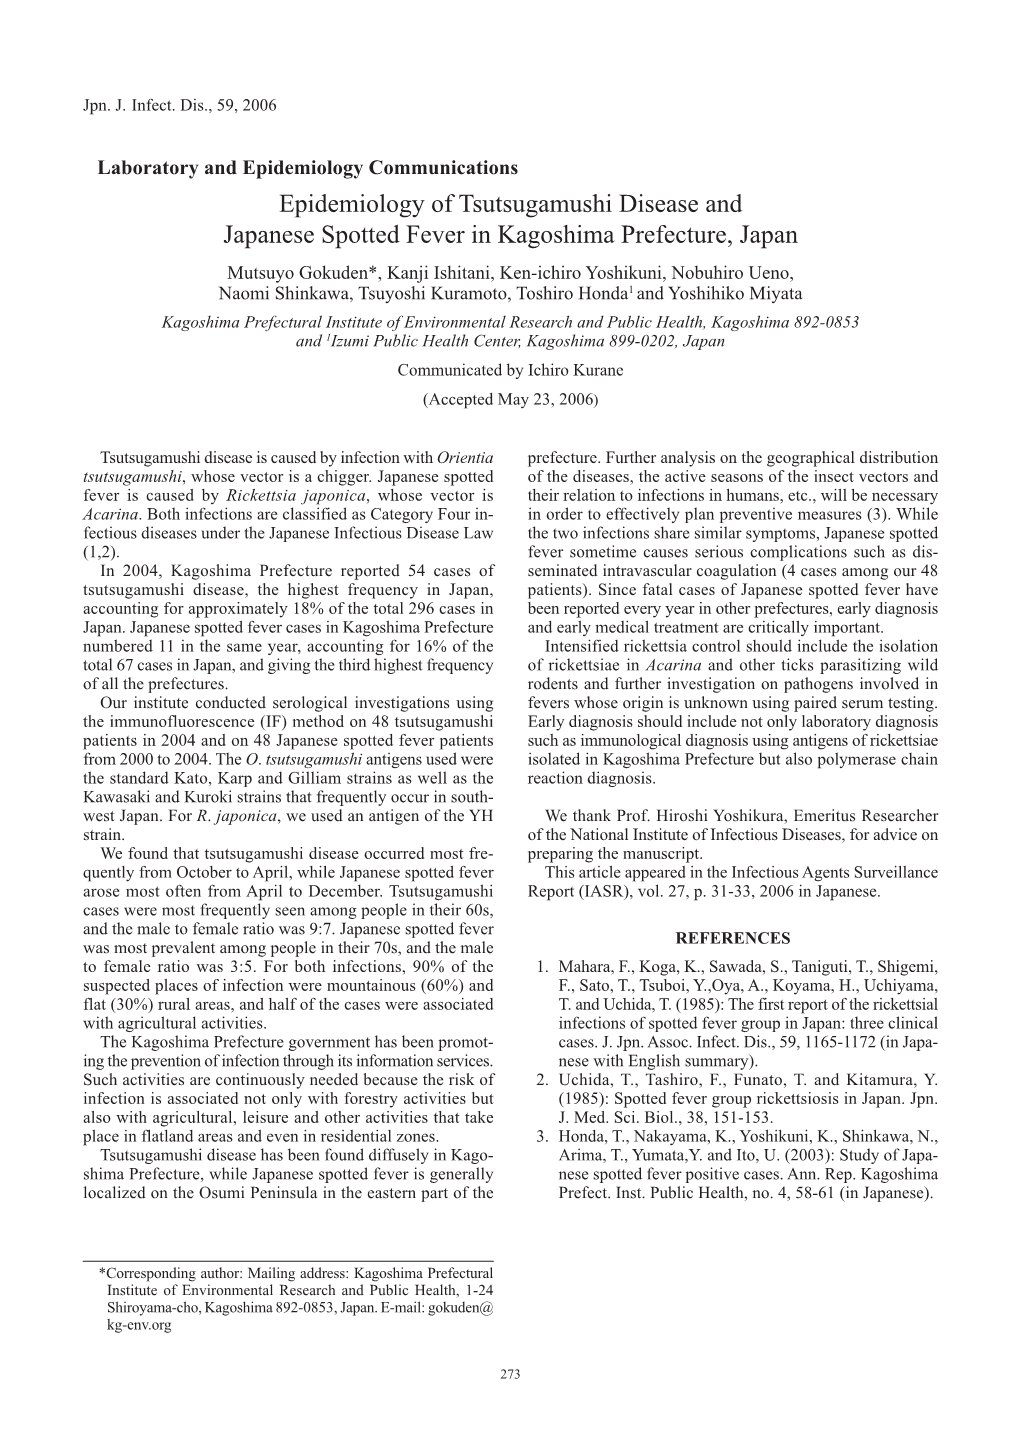 Epidemiology of Tsutsugamushi Disease and Japanese Spotted